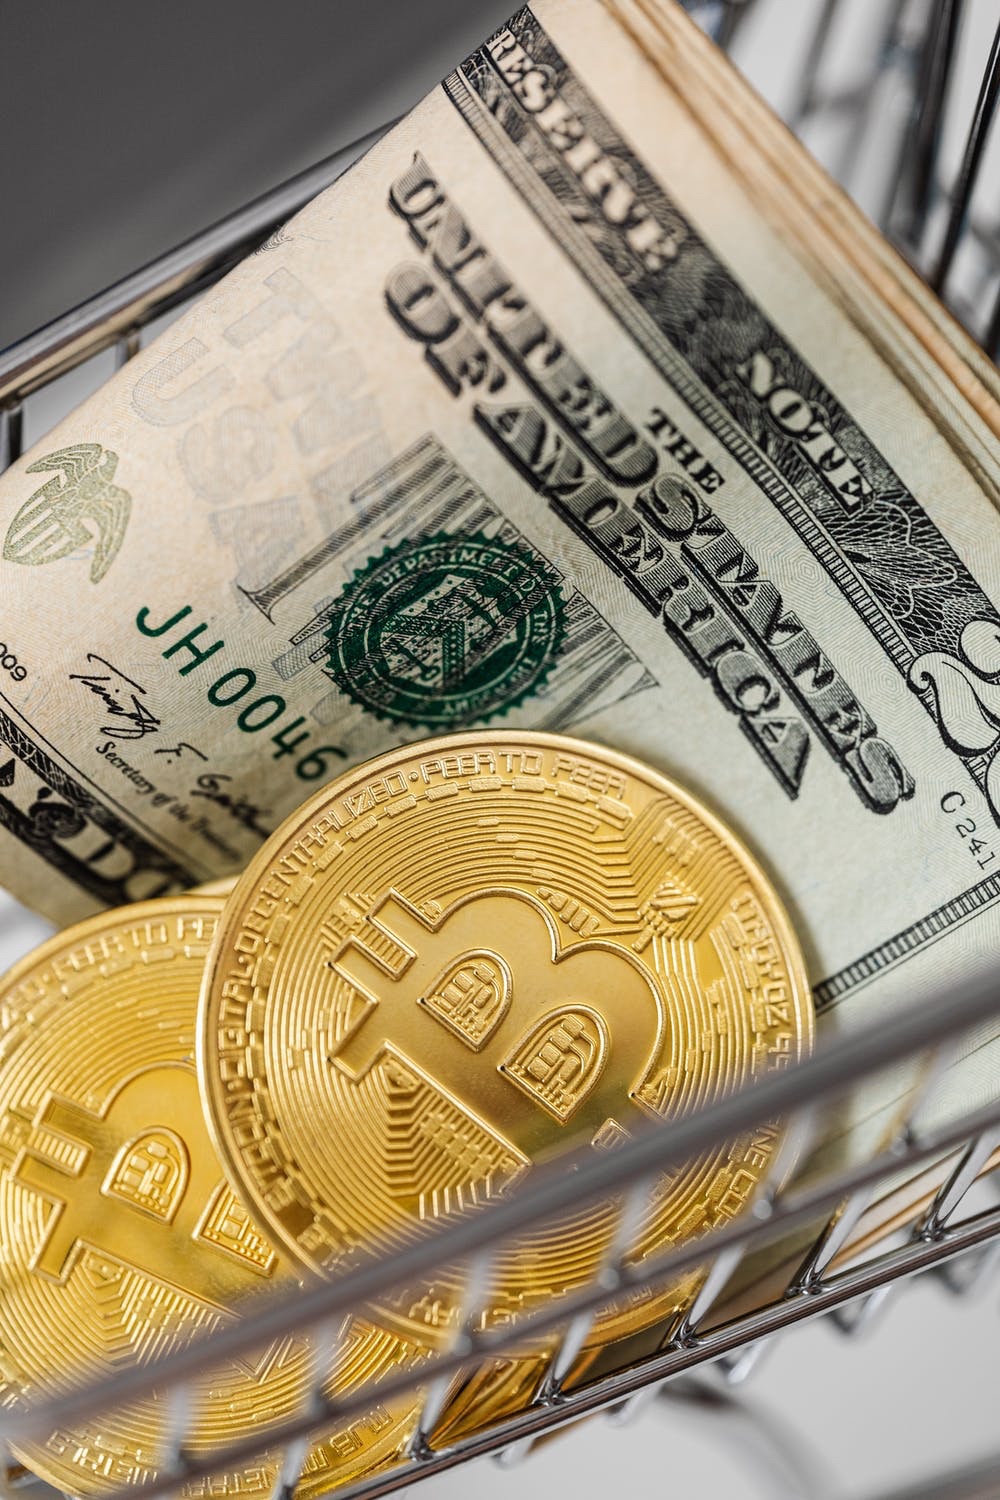 Sell bitcoin to buy Minnesota home